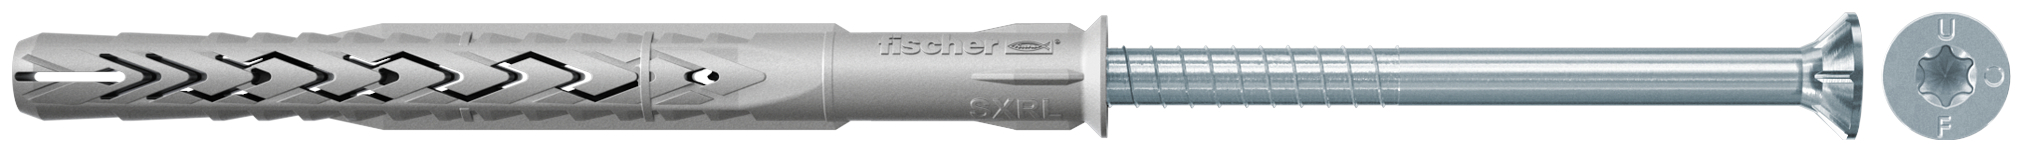 fischer Tasselli prolungati SXRL 8x160 T (1 Pz.) Tassello prolungato in nylon con marcatura CE con vite premontata T.S.P. impronta torx fie3162